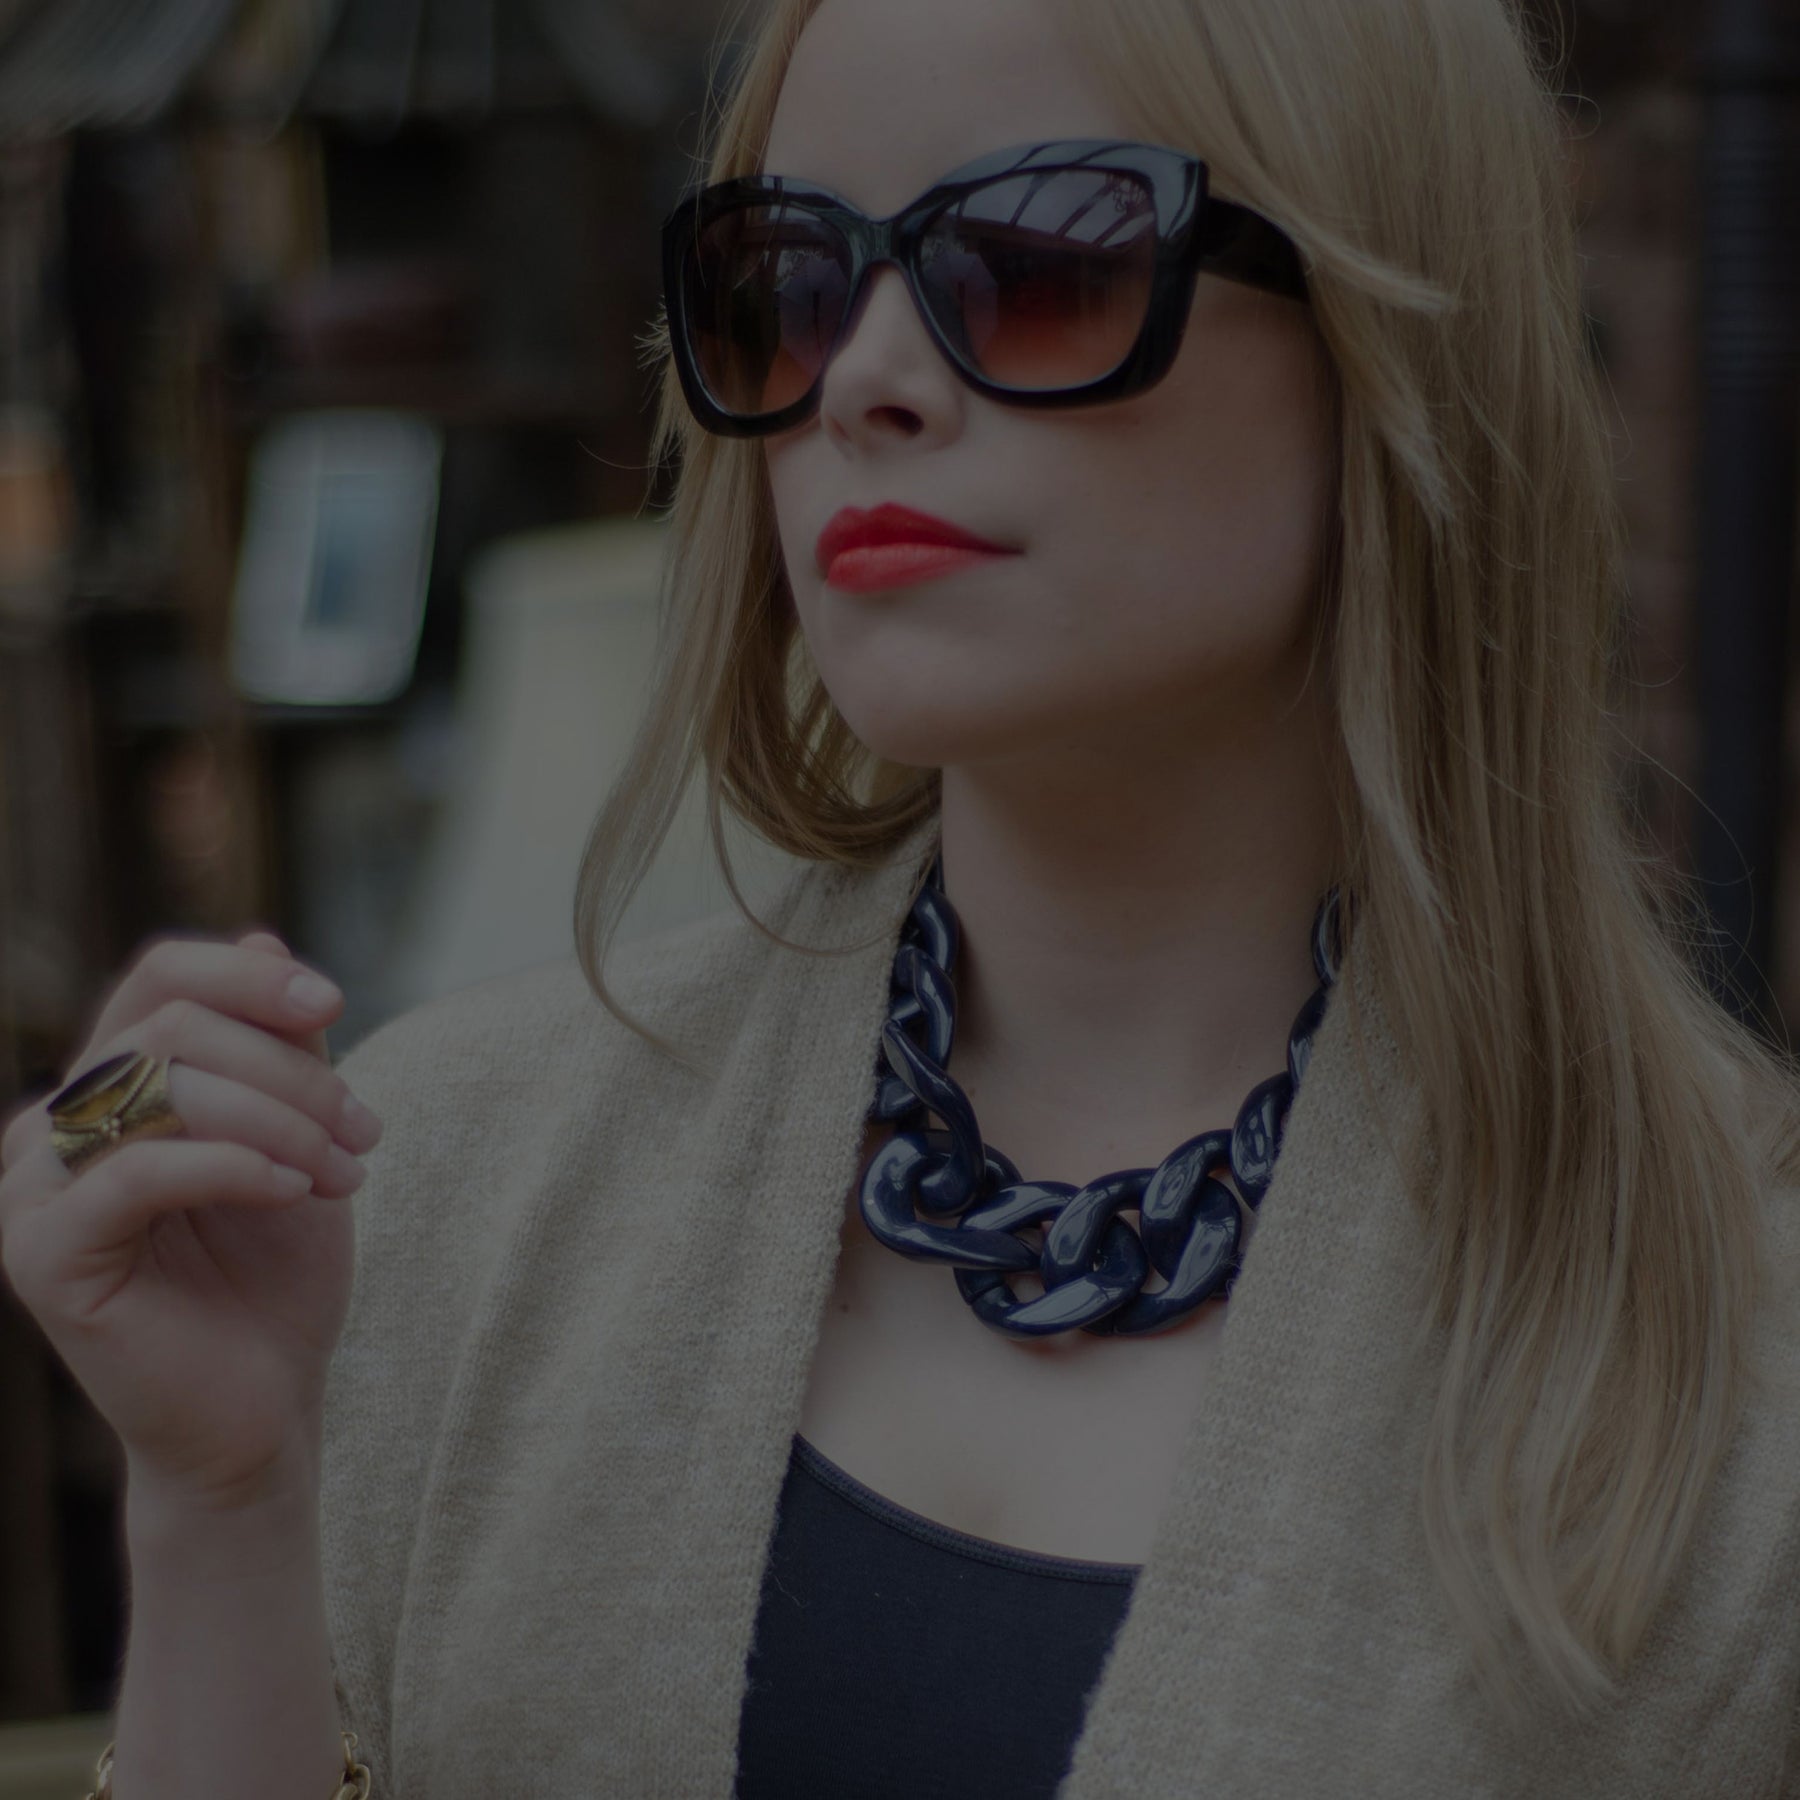 glamorous image of a women wearing sunglasses